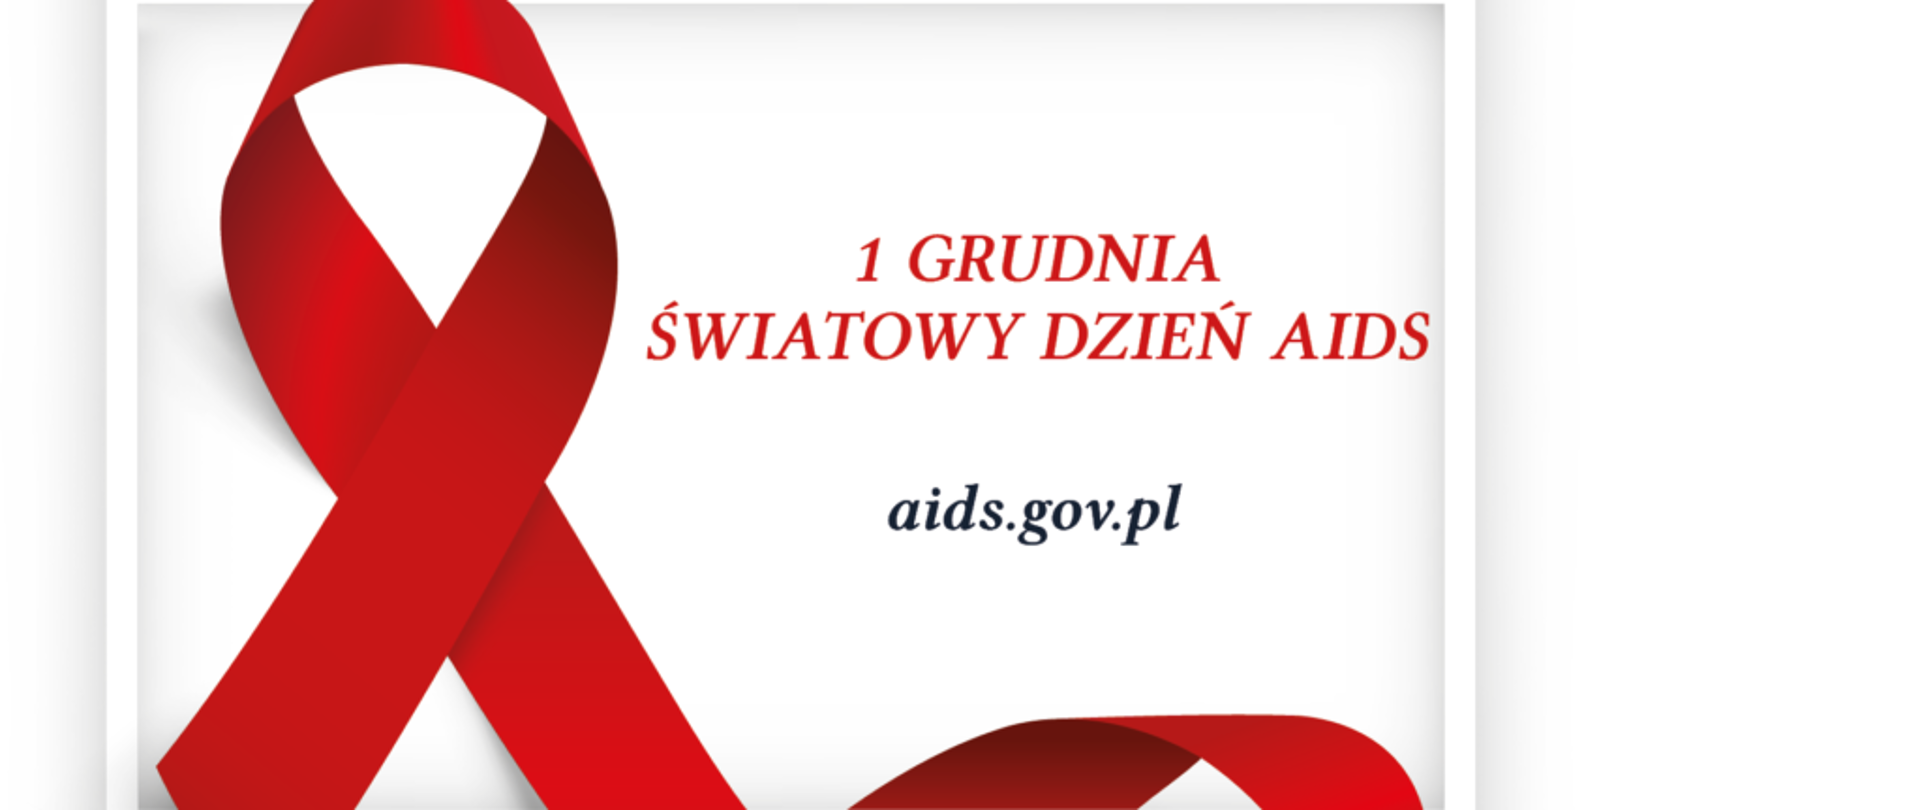 Czerwona wstążeczka symbolizująca światowy dzień AIDS, który przypada na dzień 1 grudnia wraz z adresem strony aids.gov.pl